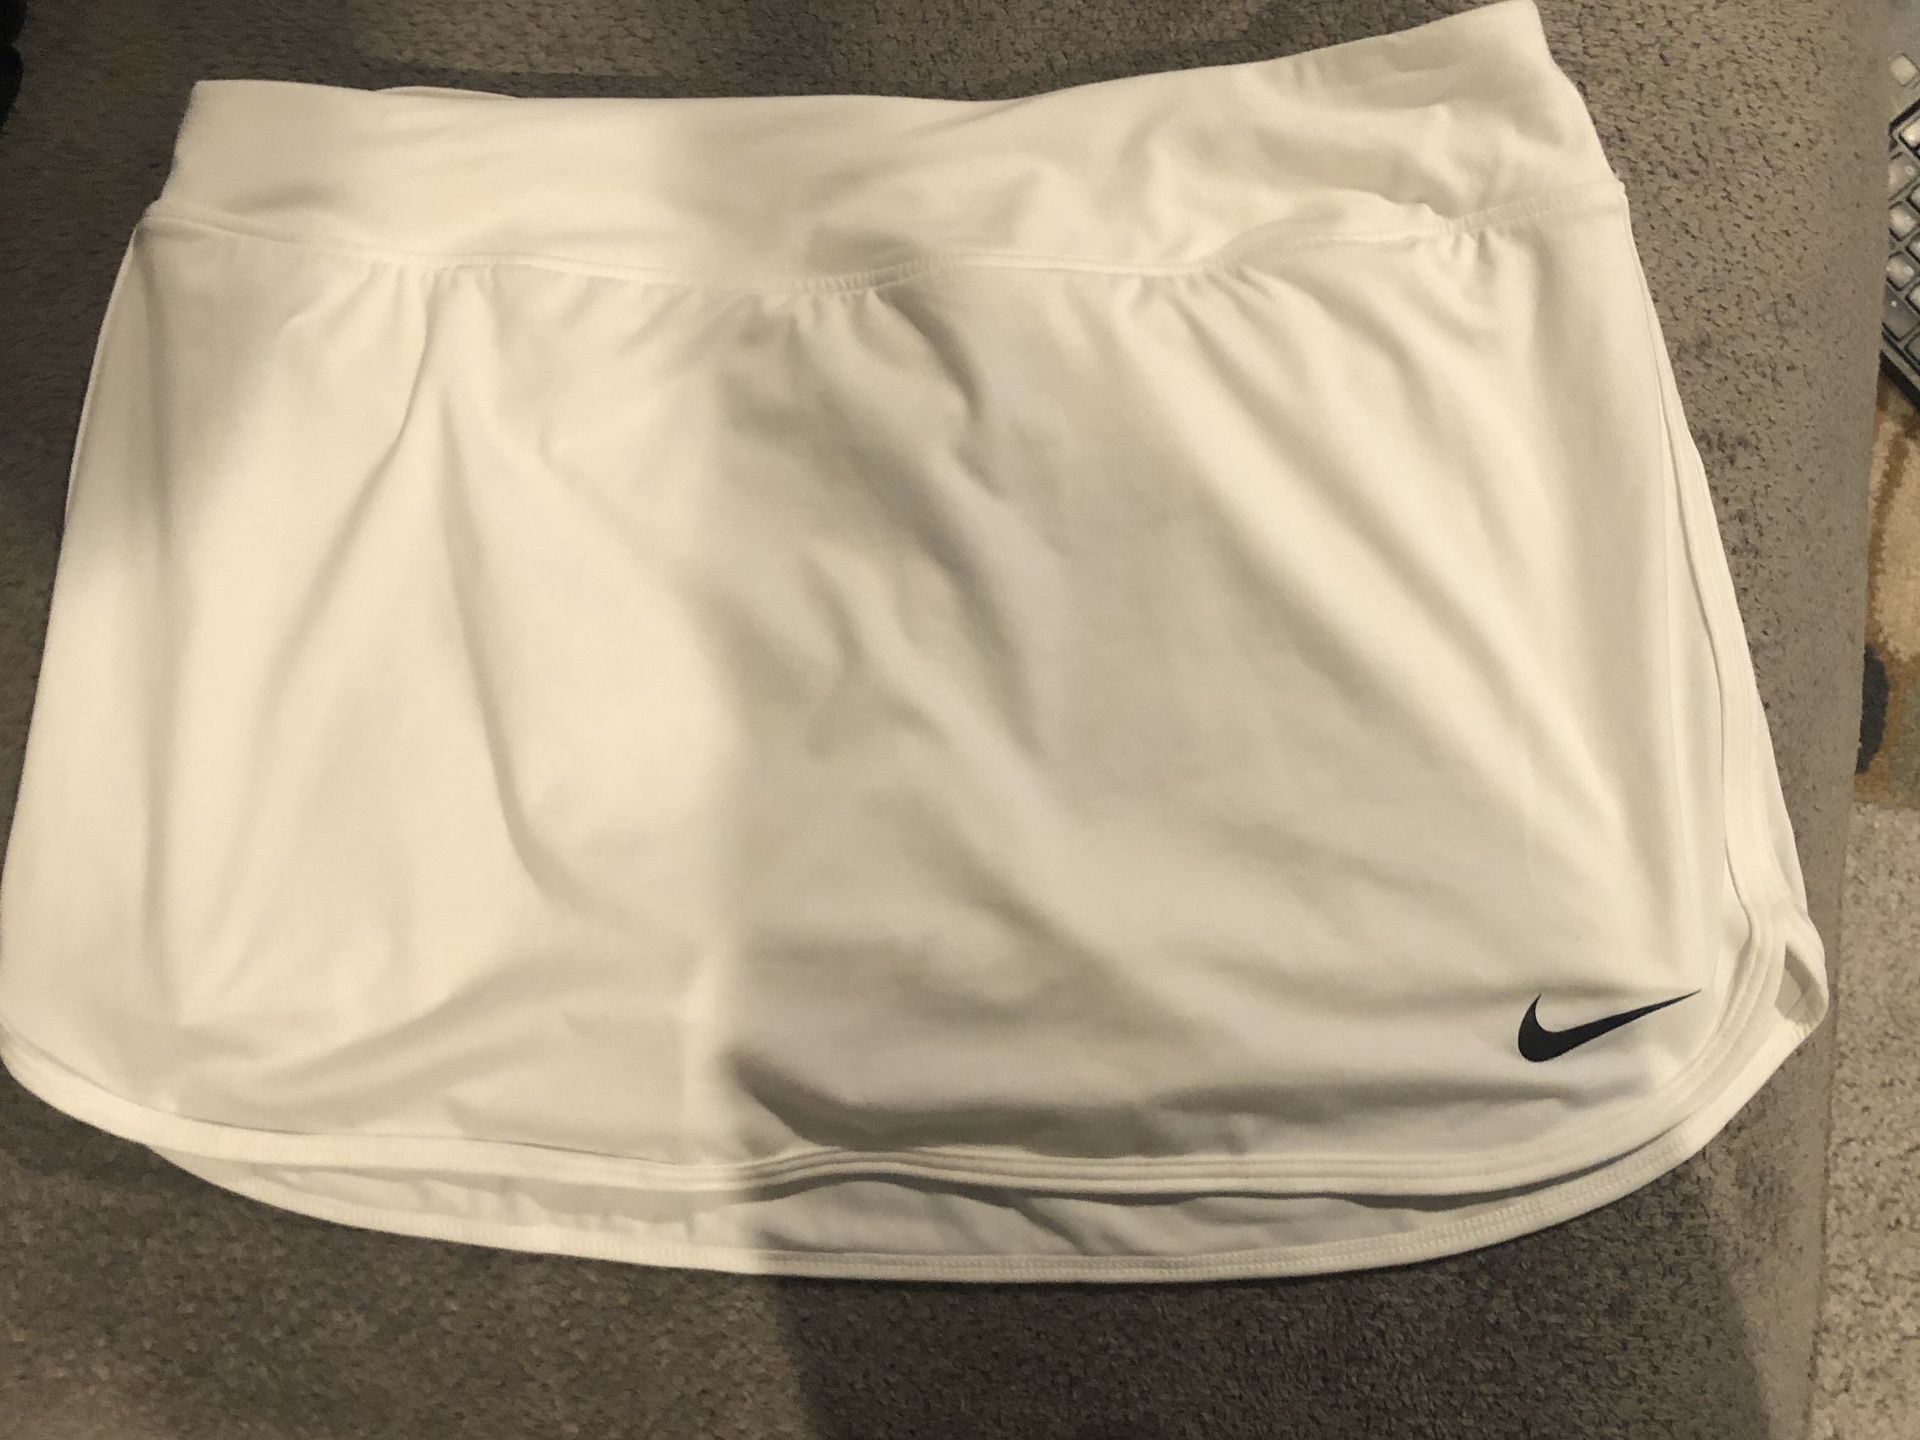 Nike women’s white tennis skirt size med